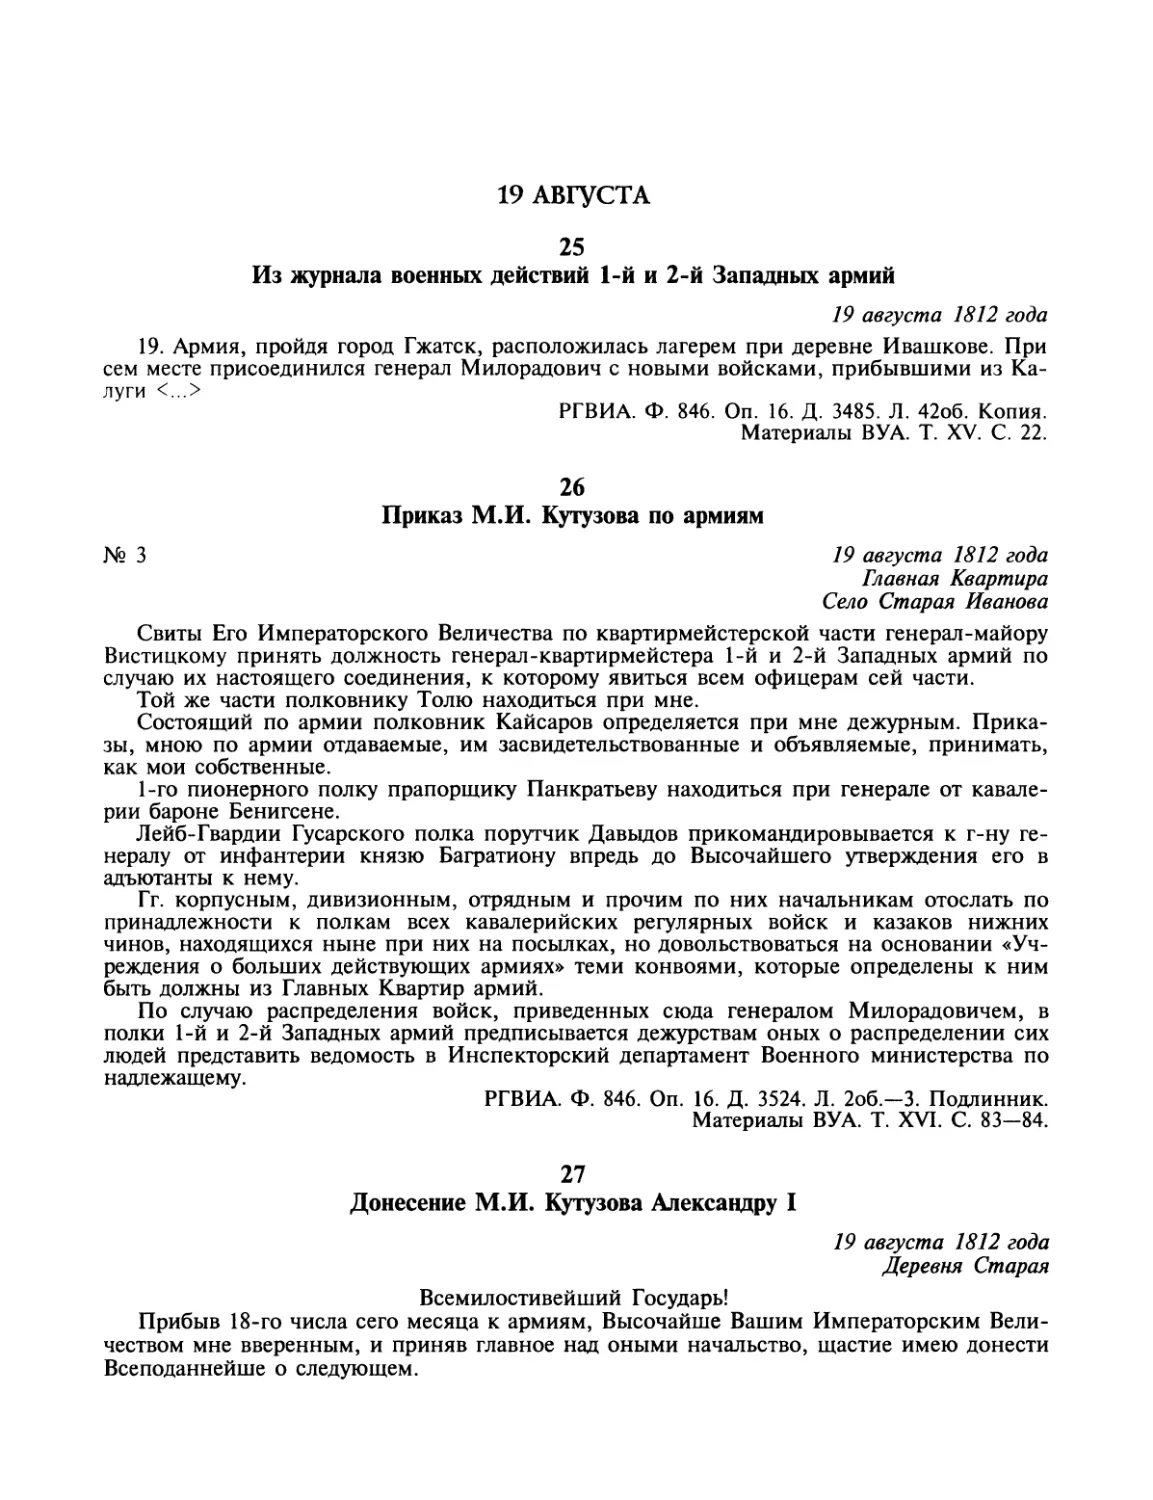 19 августа
Приказ М.И.Кутузова по армиям
Донесение М.И.Кутузова Александру I